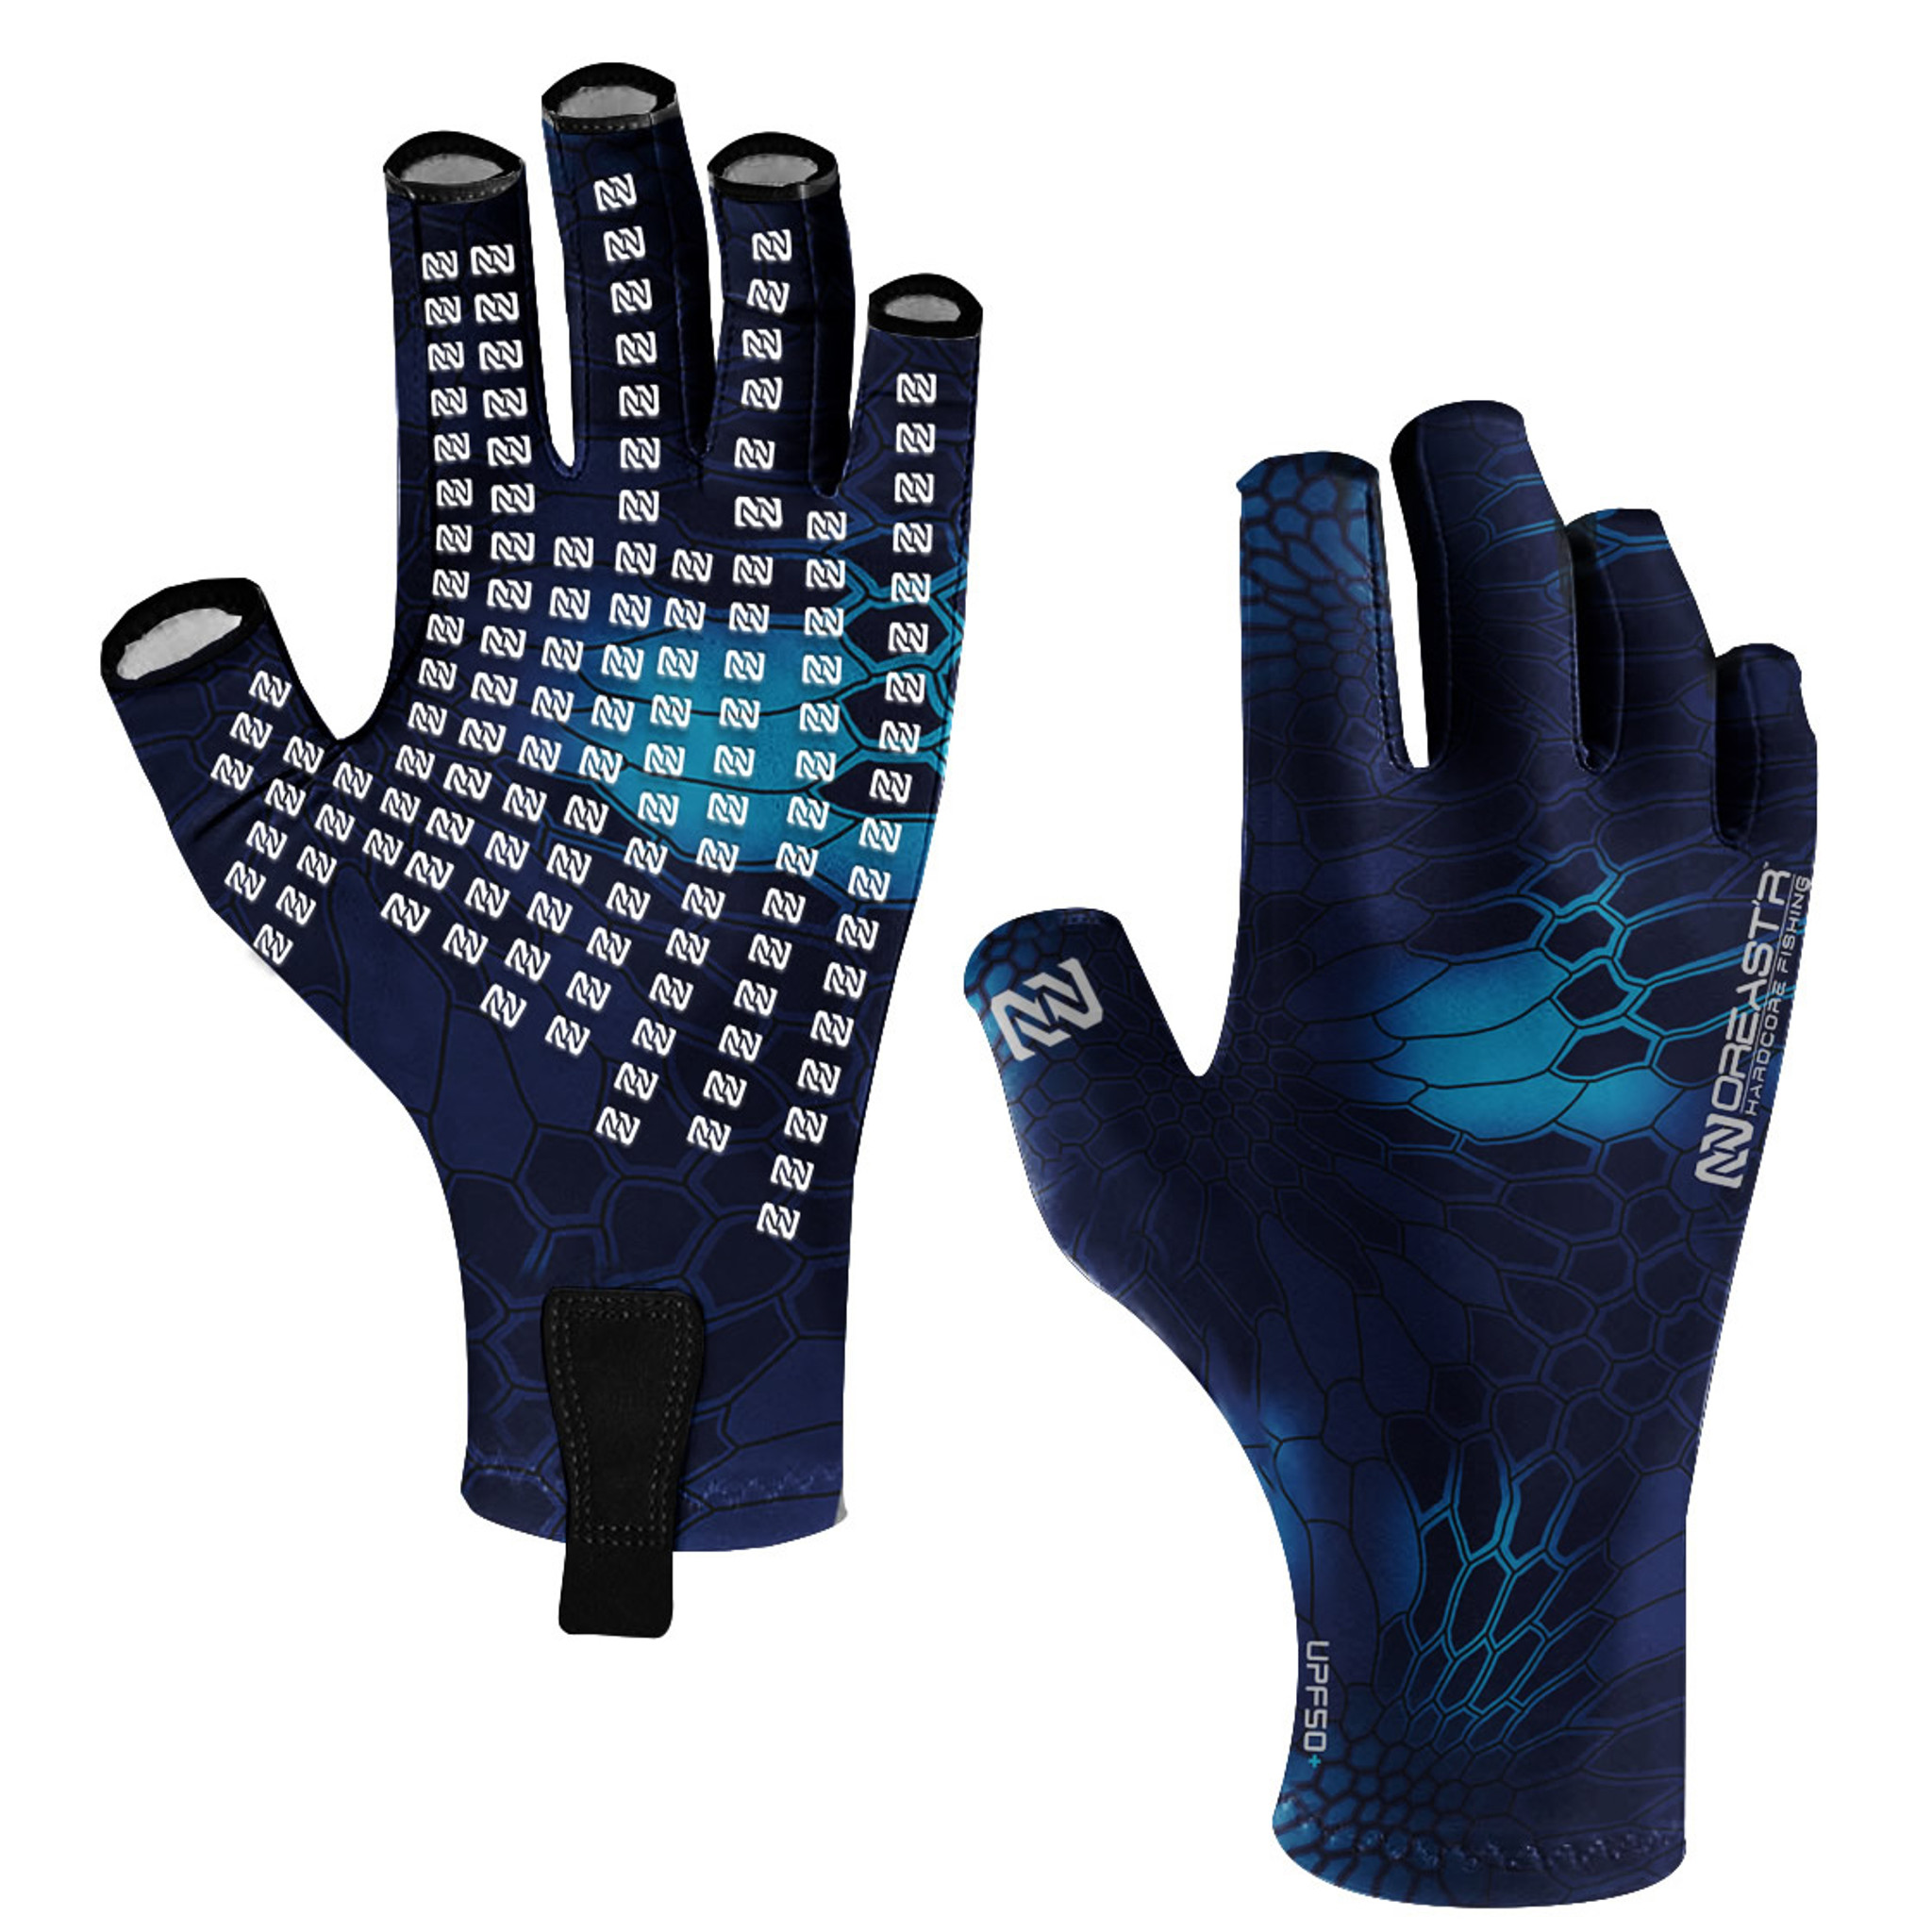  Eicolorte Fingerless Fishing Gloves - Men Women